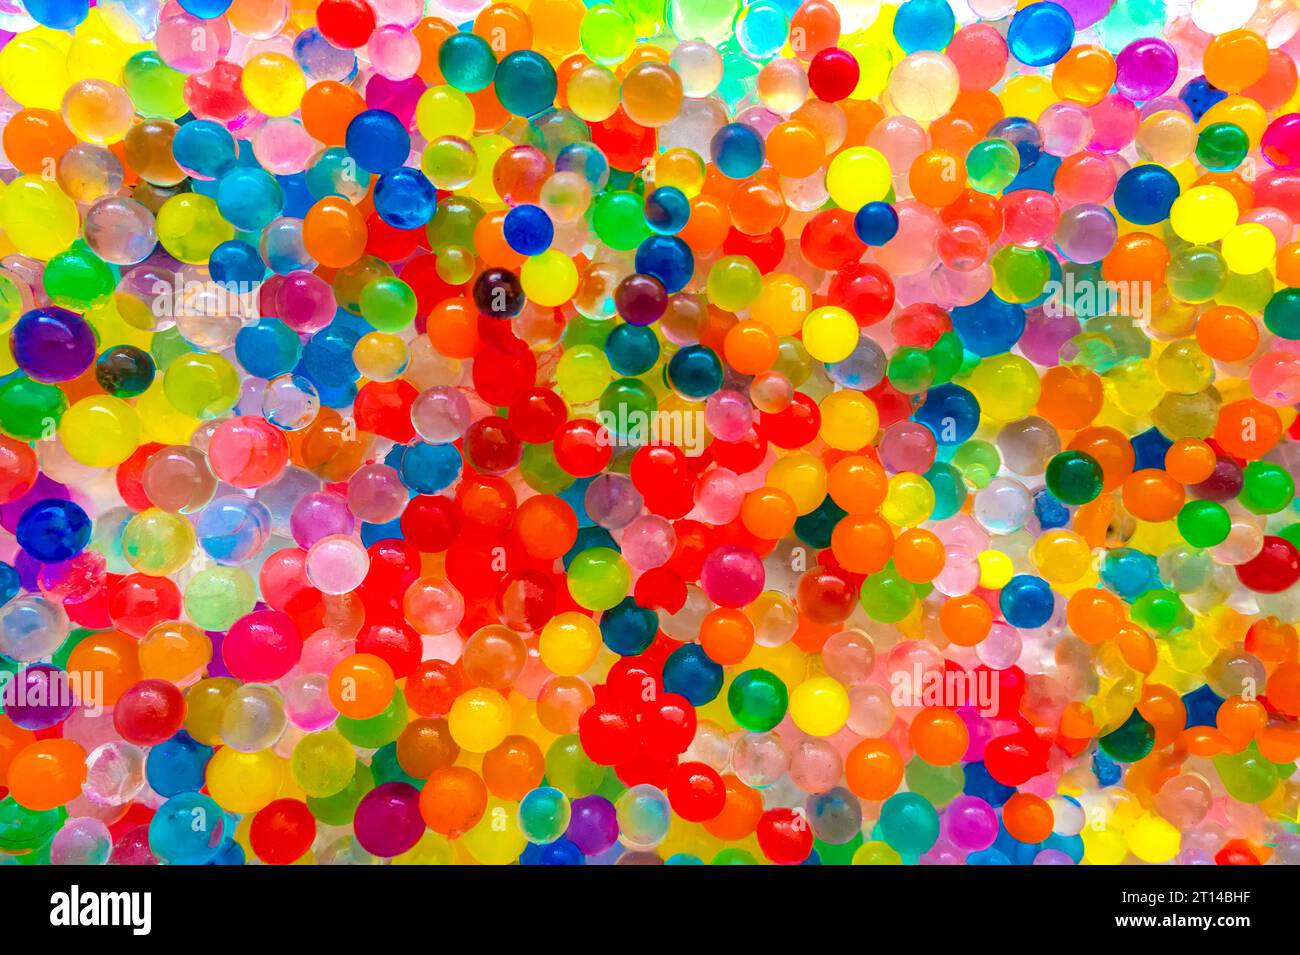 Photo De Closeup De Nombreux Orbees Colorés Ou Des Boules Translucides  Photo stock - Image du fond, vibrant: 260214298